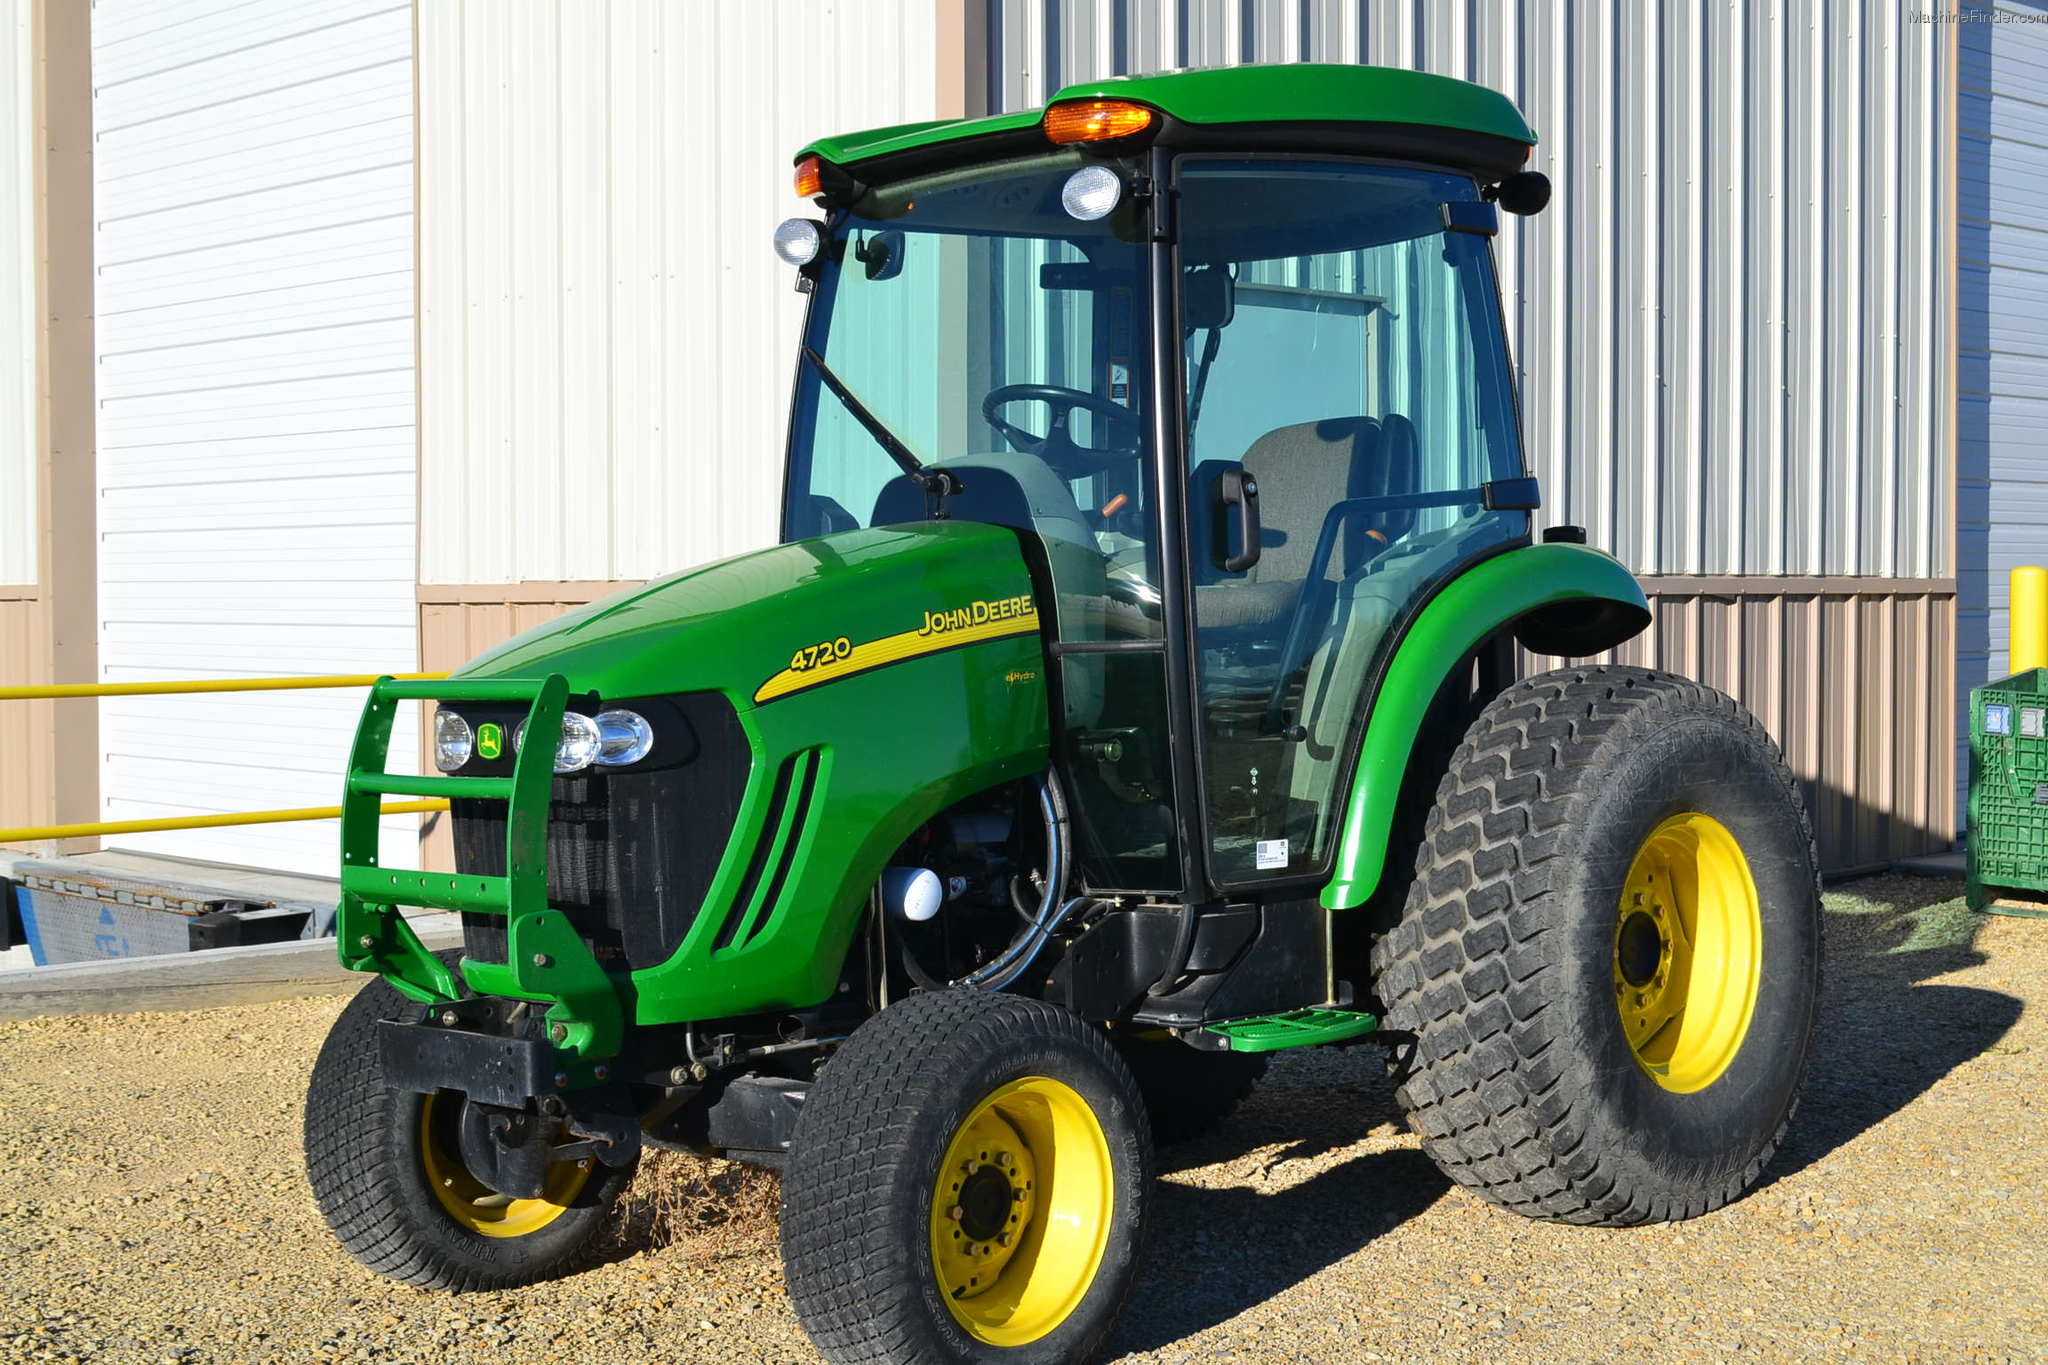 2008 John Deere 4720 Tractors - Compact (1-40hp.) - John Deere ...